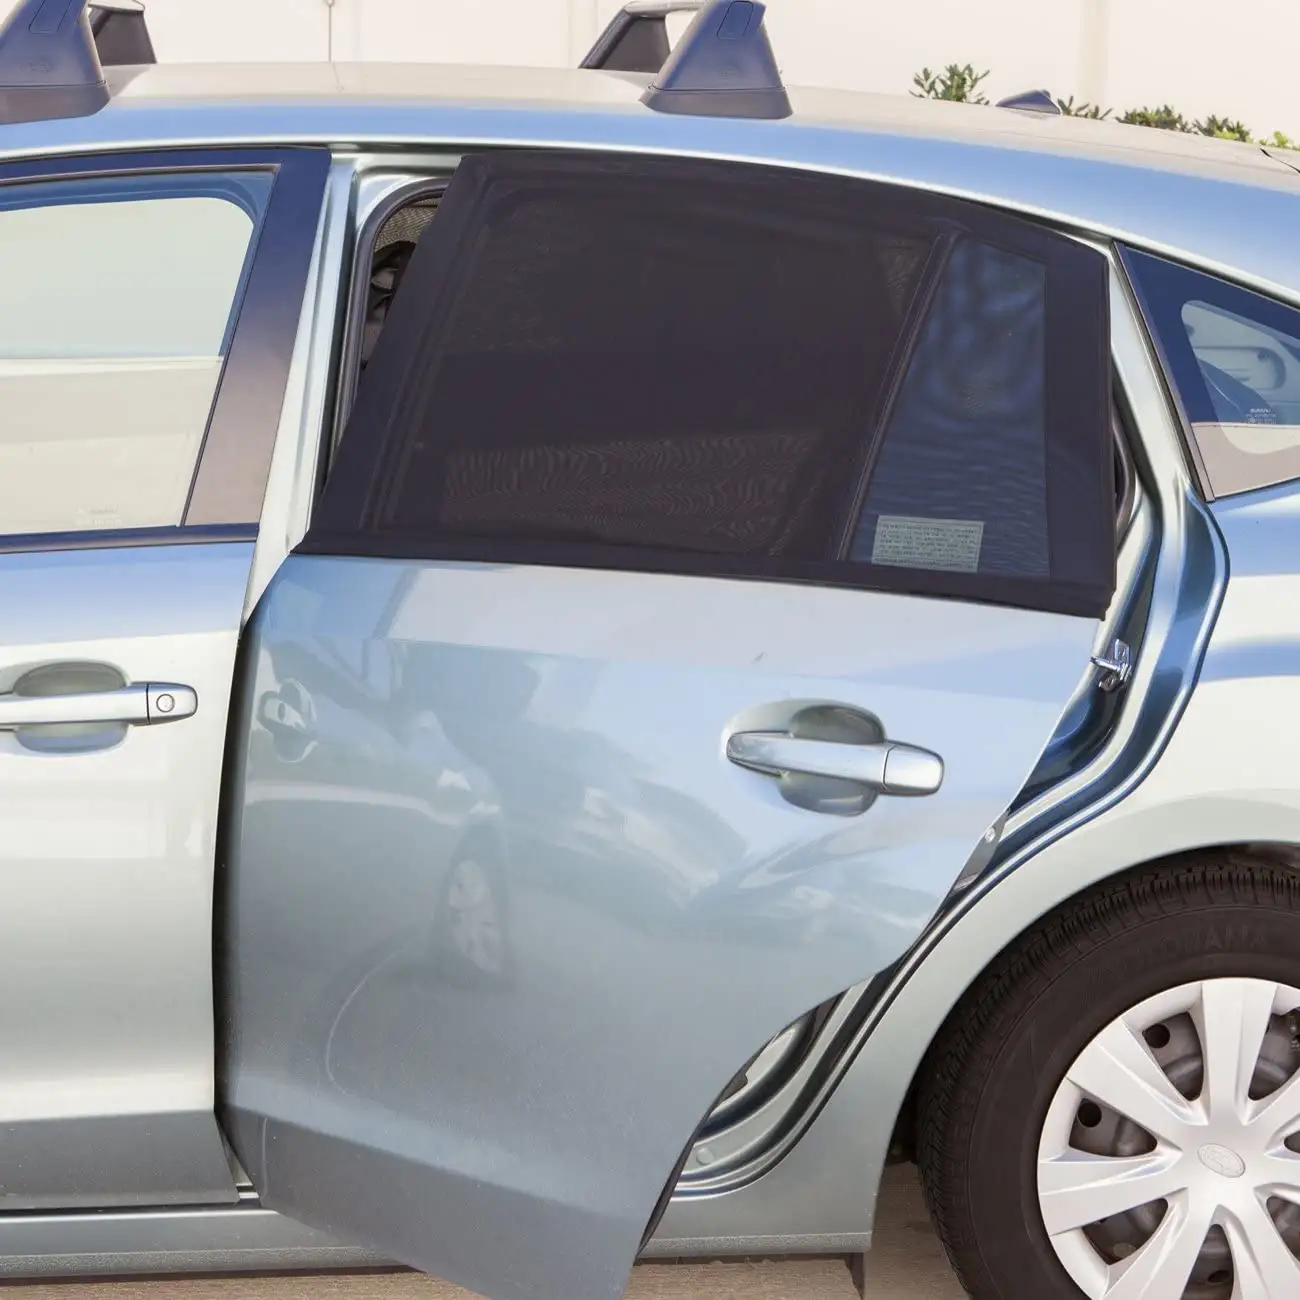 ใช้ได้กับรถส่วนใหญ่ที่บังแดดหน้าต่างรถยนต์,ตาข่ายระบายอากาศได้ดีสามารถใช้ได้กับหน้าต่างรถยนต์ทุกรุ่น